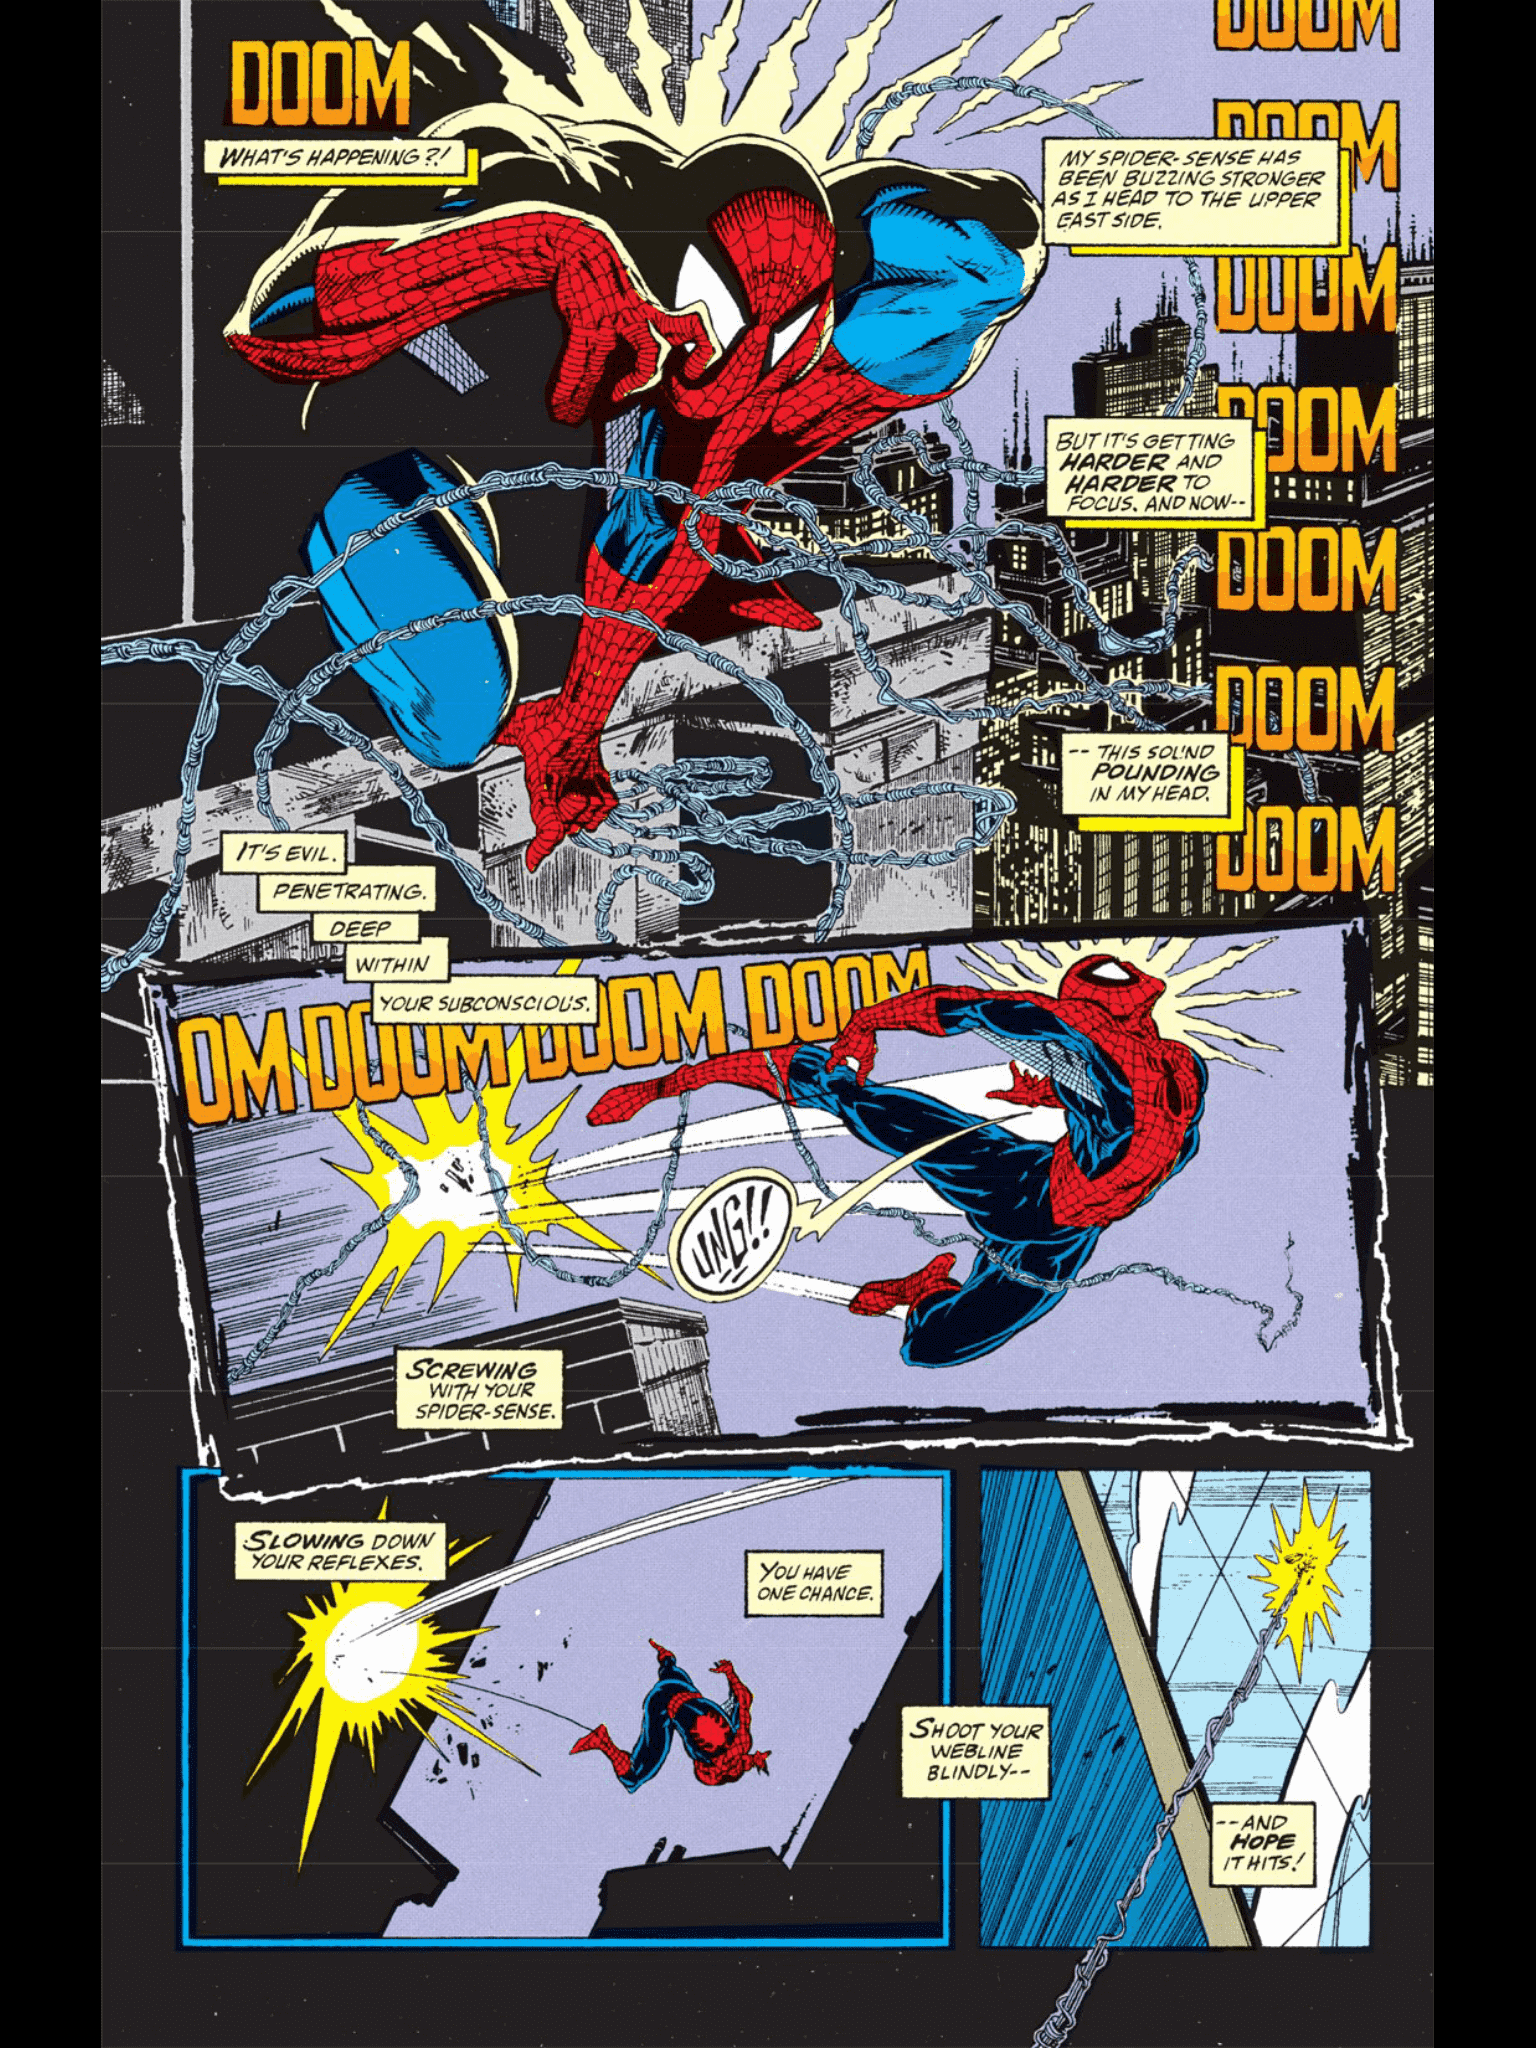 Marvel Comics Postcard Spiderman # 13 cover Todd McFarlane USA, 1991 